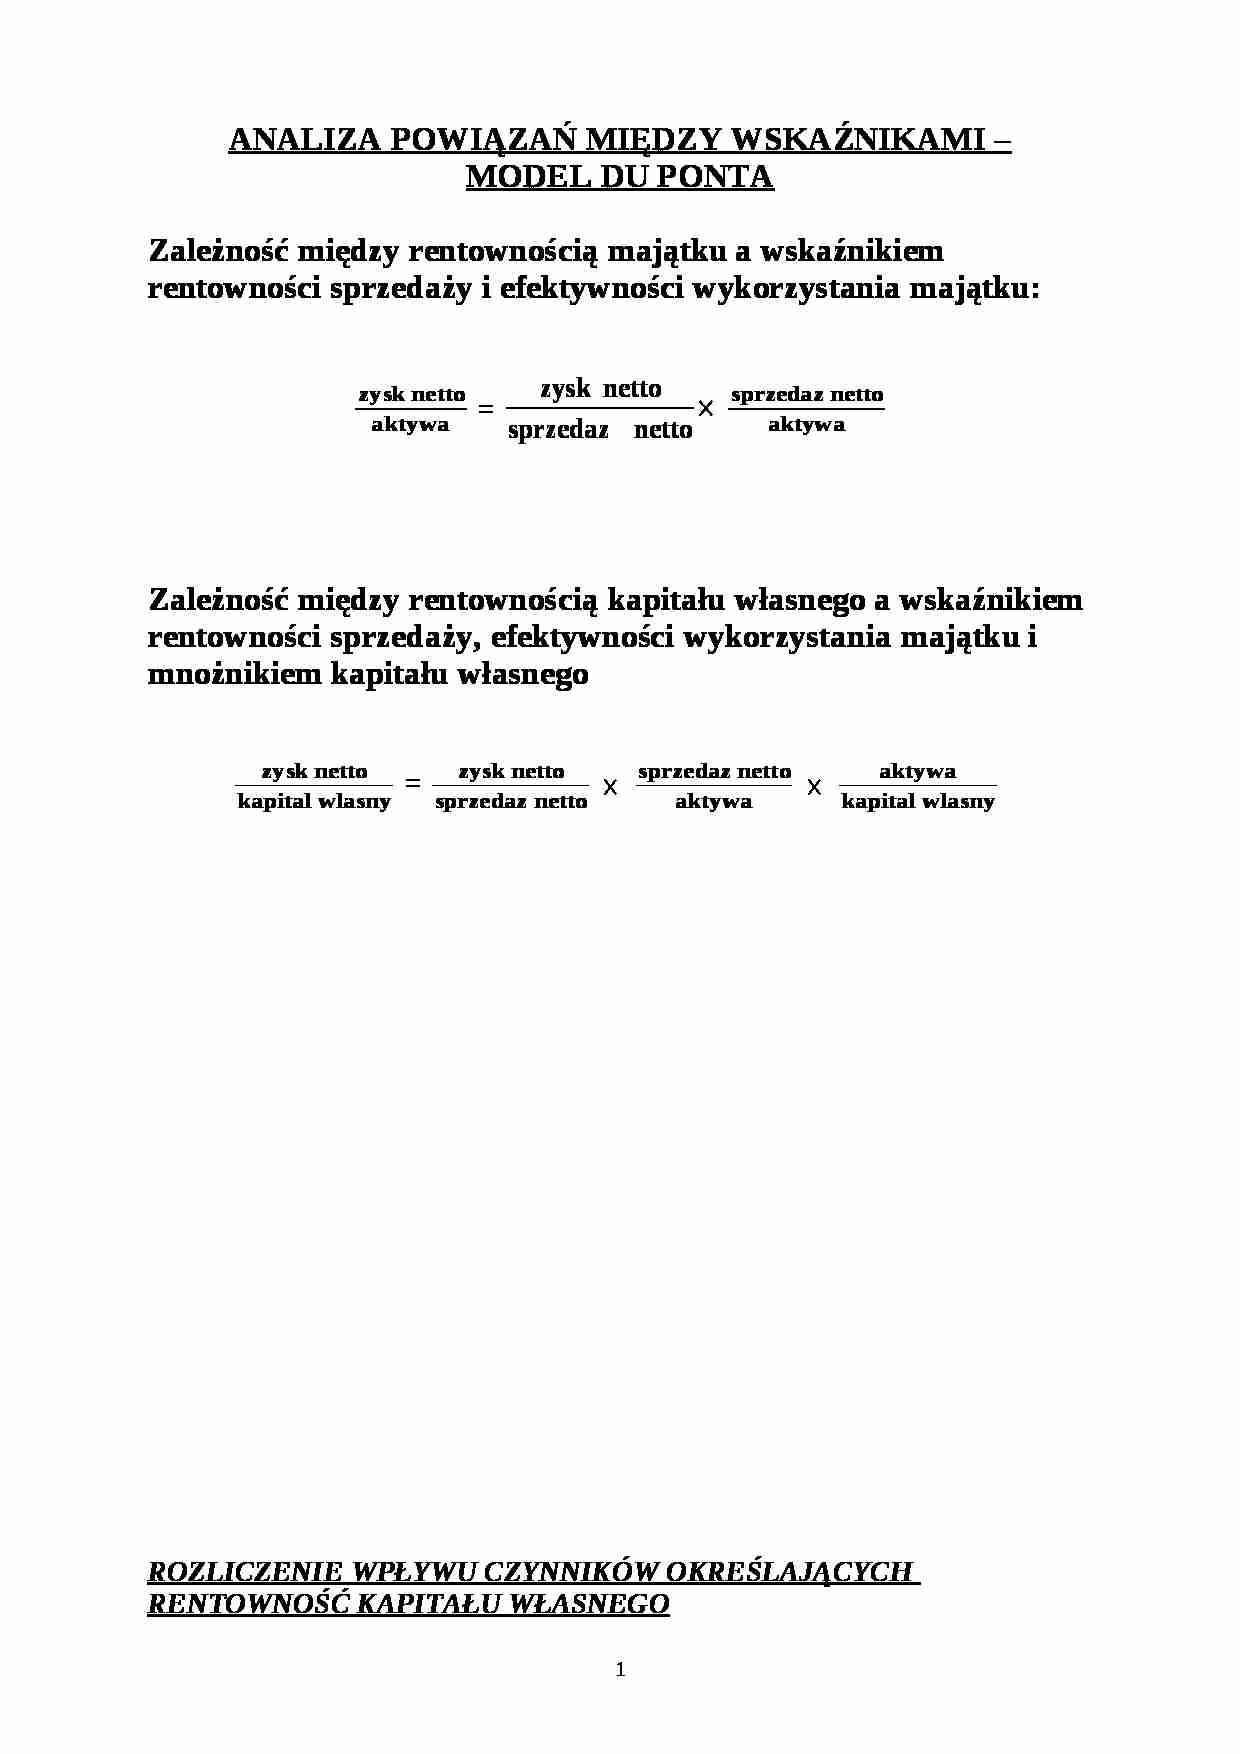 Wykład - analiza powiązań między wskaźnikami, model Du Ponta - strona 1